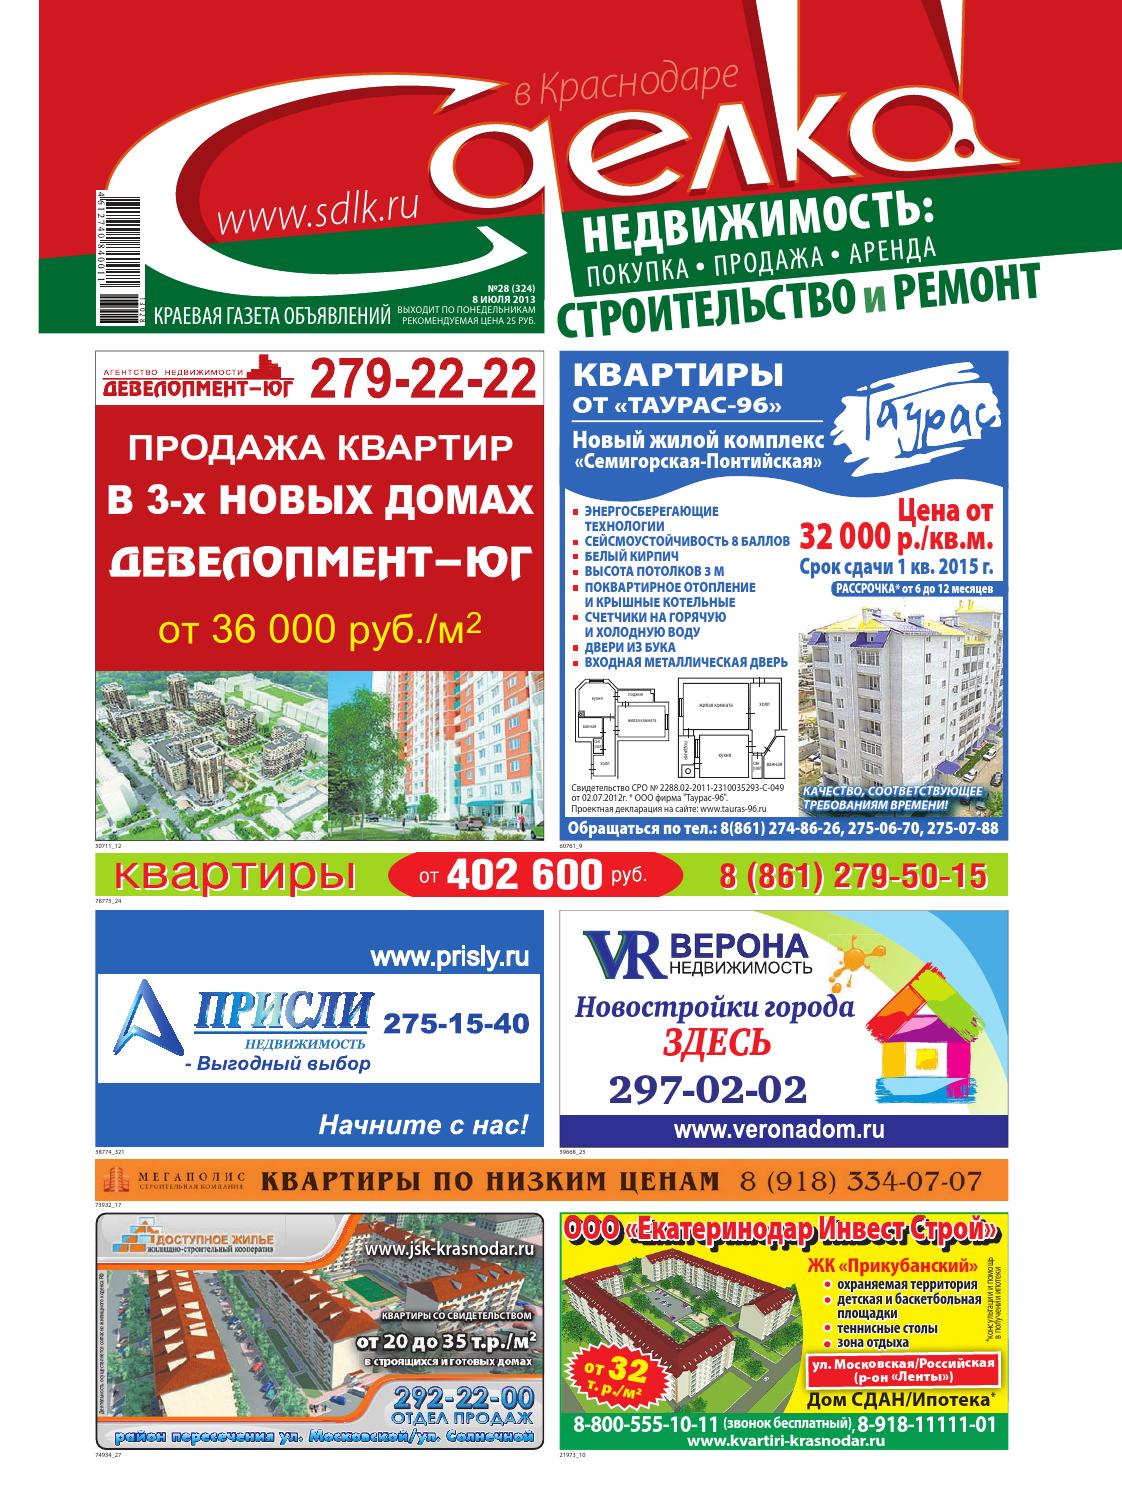 Сделка в Краснодаре №28, июль 2013